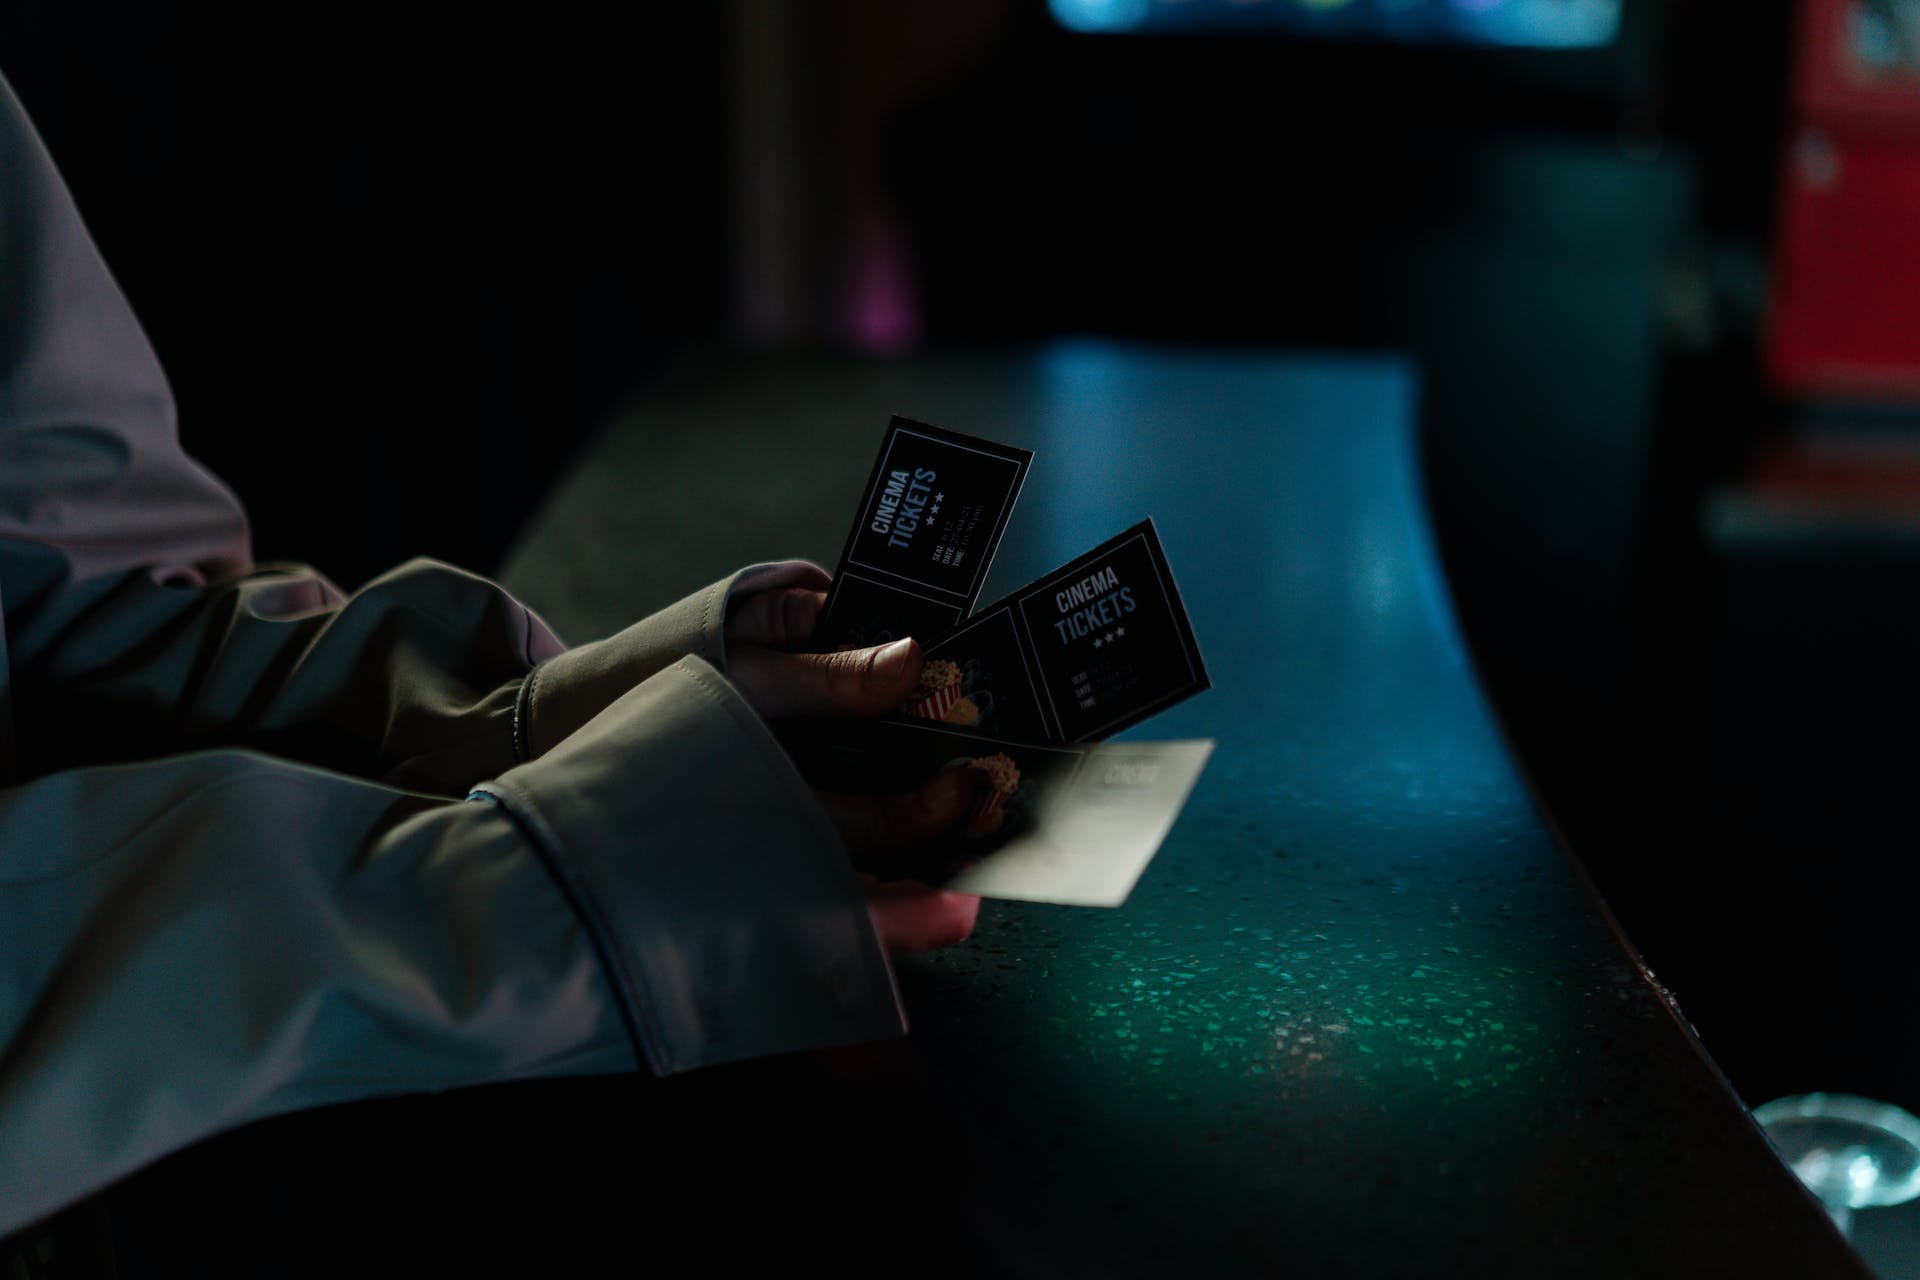 Une personne tenant des tickets de cinéma | Source : Pexels